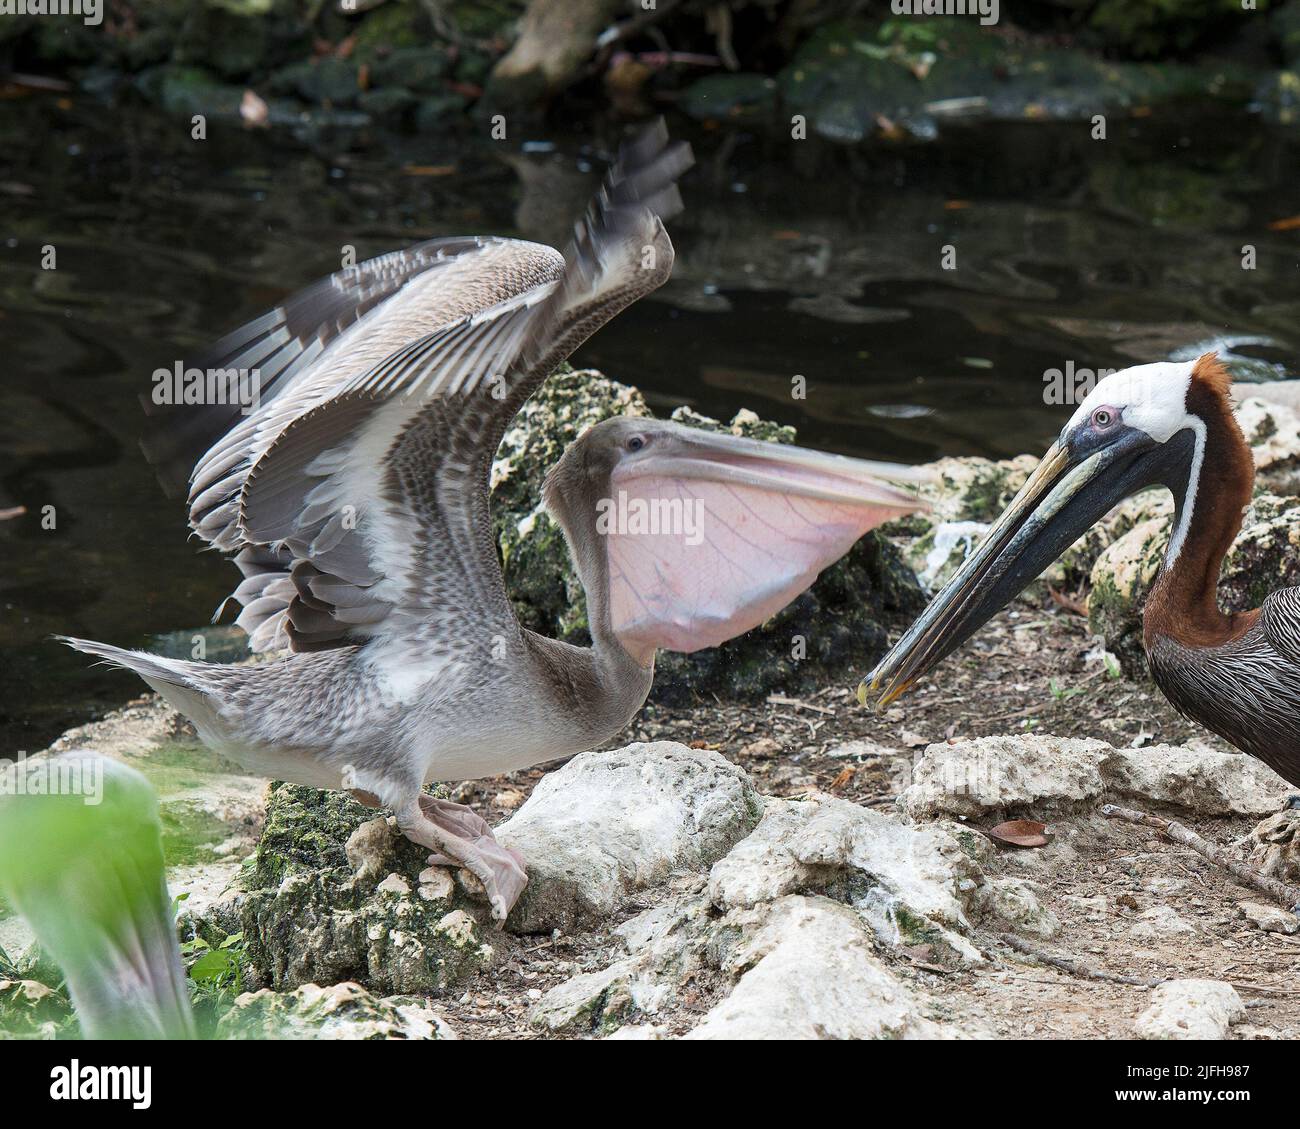 Brauner Pelikanvögel, der seinen Babypelikan am Wasser füttert, mit ausgebreiteten Flügeln, Körper, Kopf, Schnabel, Auge, Gefieder in seiner Umgebung und Umgebung. Stockfoto